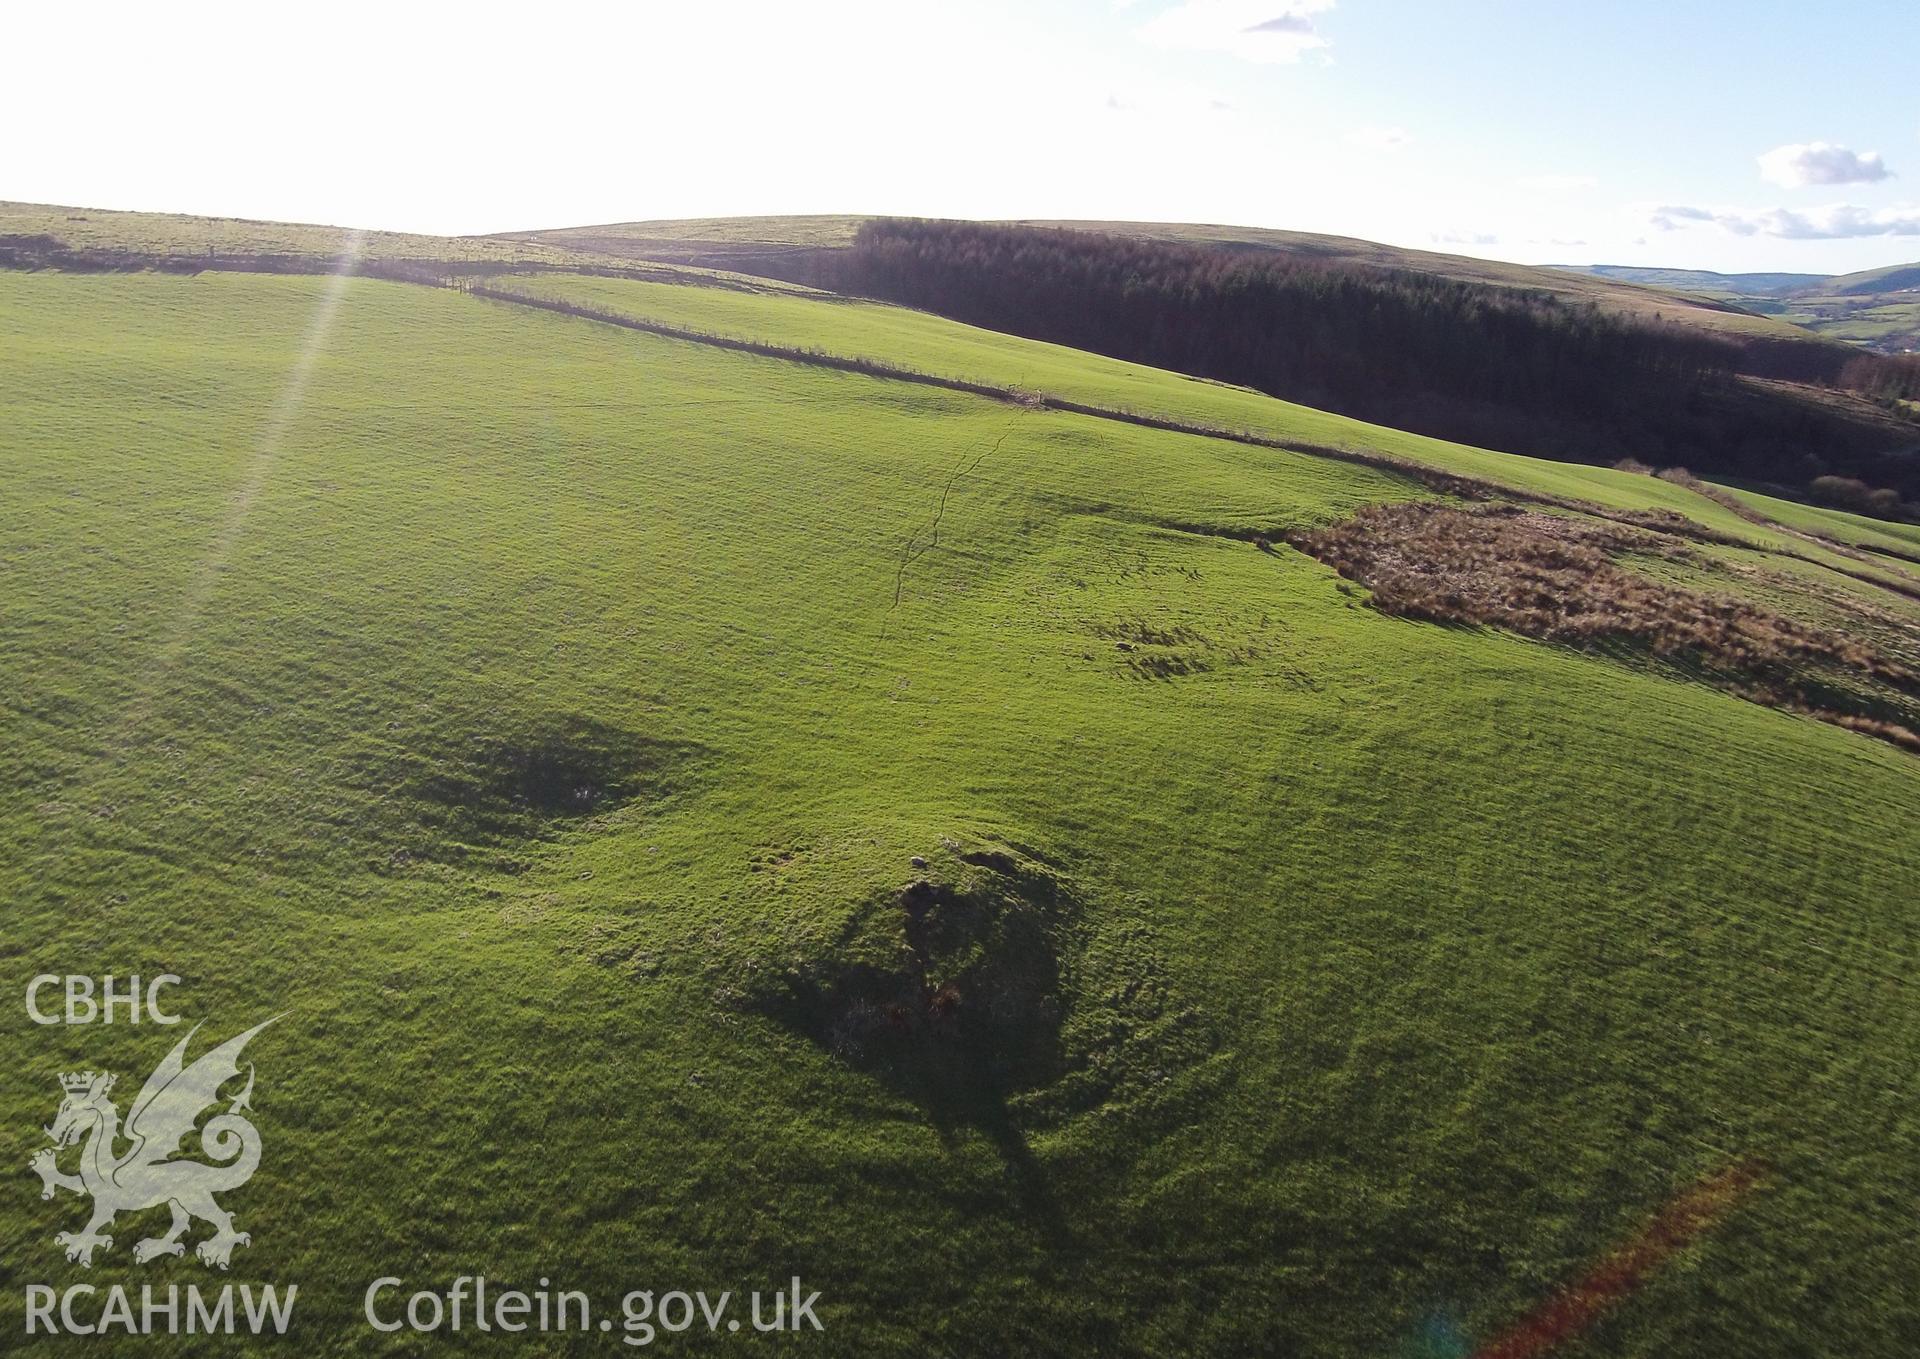 Colour aerial photo showing Mynydd y Gaer, taken by Paul R. Davis,  24th February 2016.